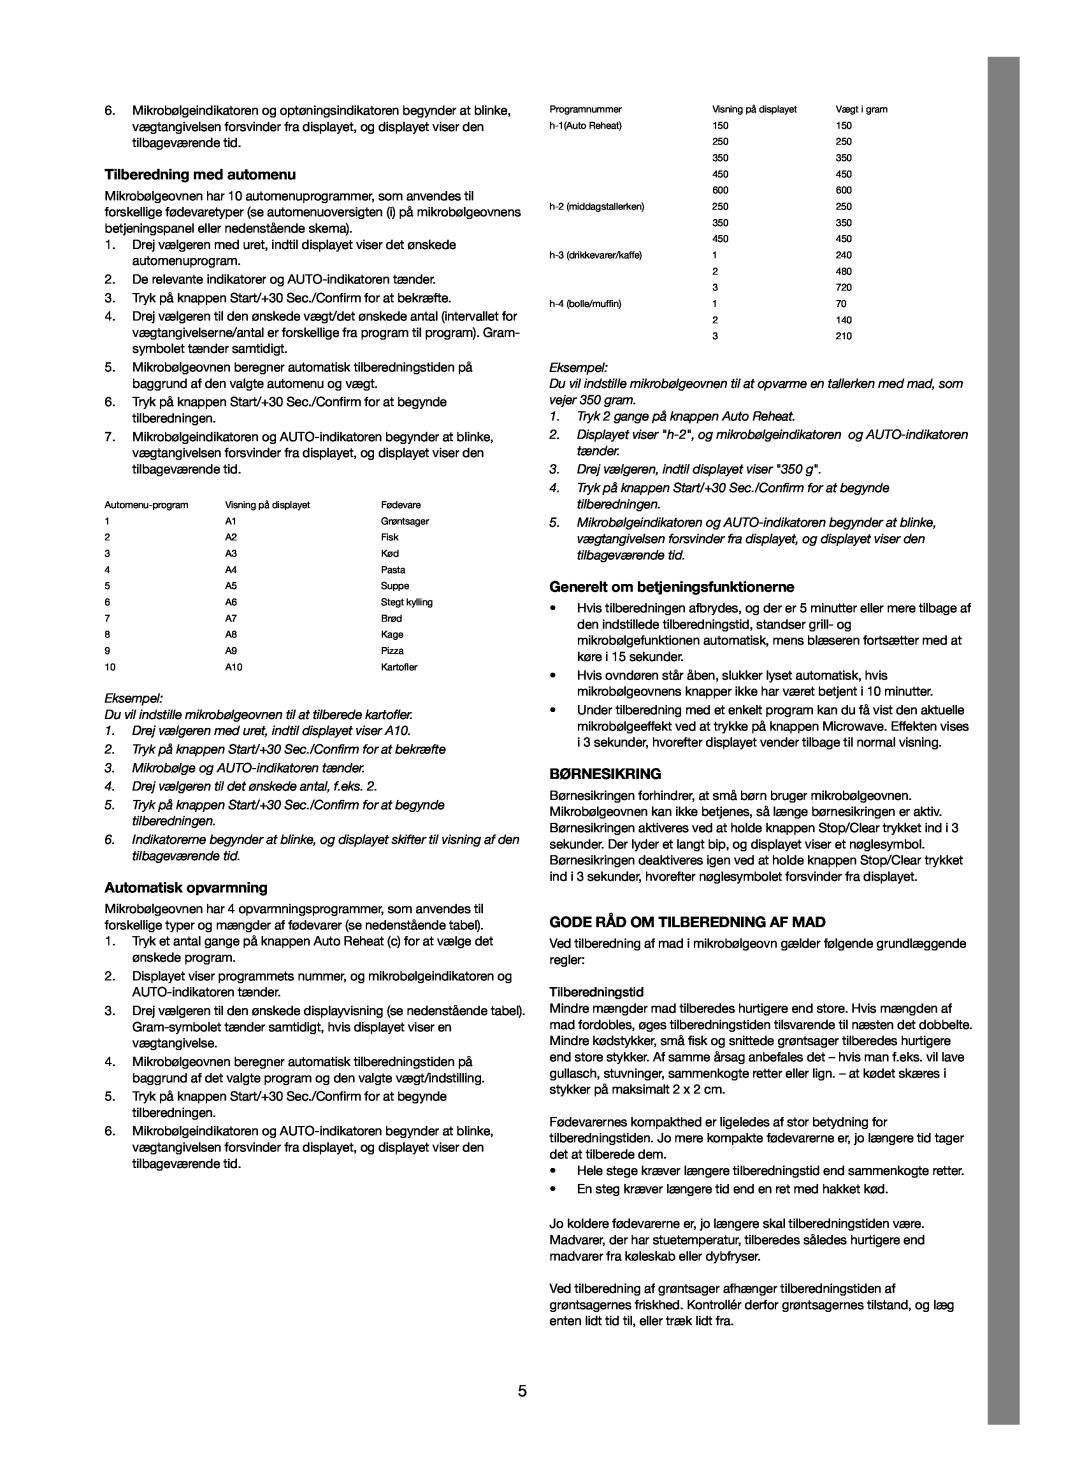 Melissa 753-123 manual Tilberedning med automenu, Automatisk opvarmning, Generelt om betjeningsfunktionerne, Børnesikring 